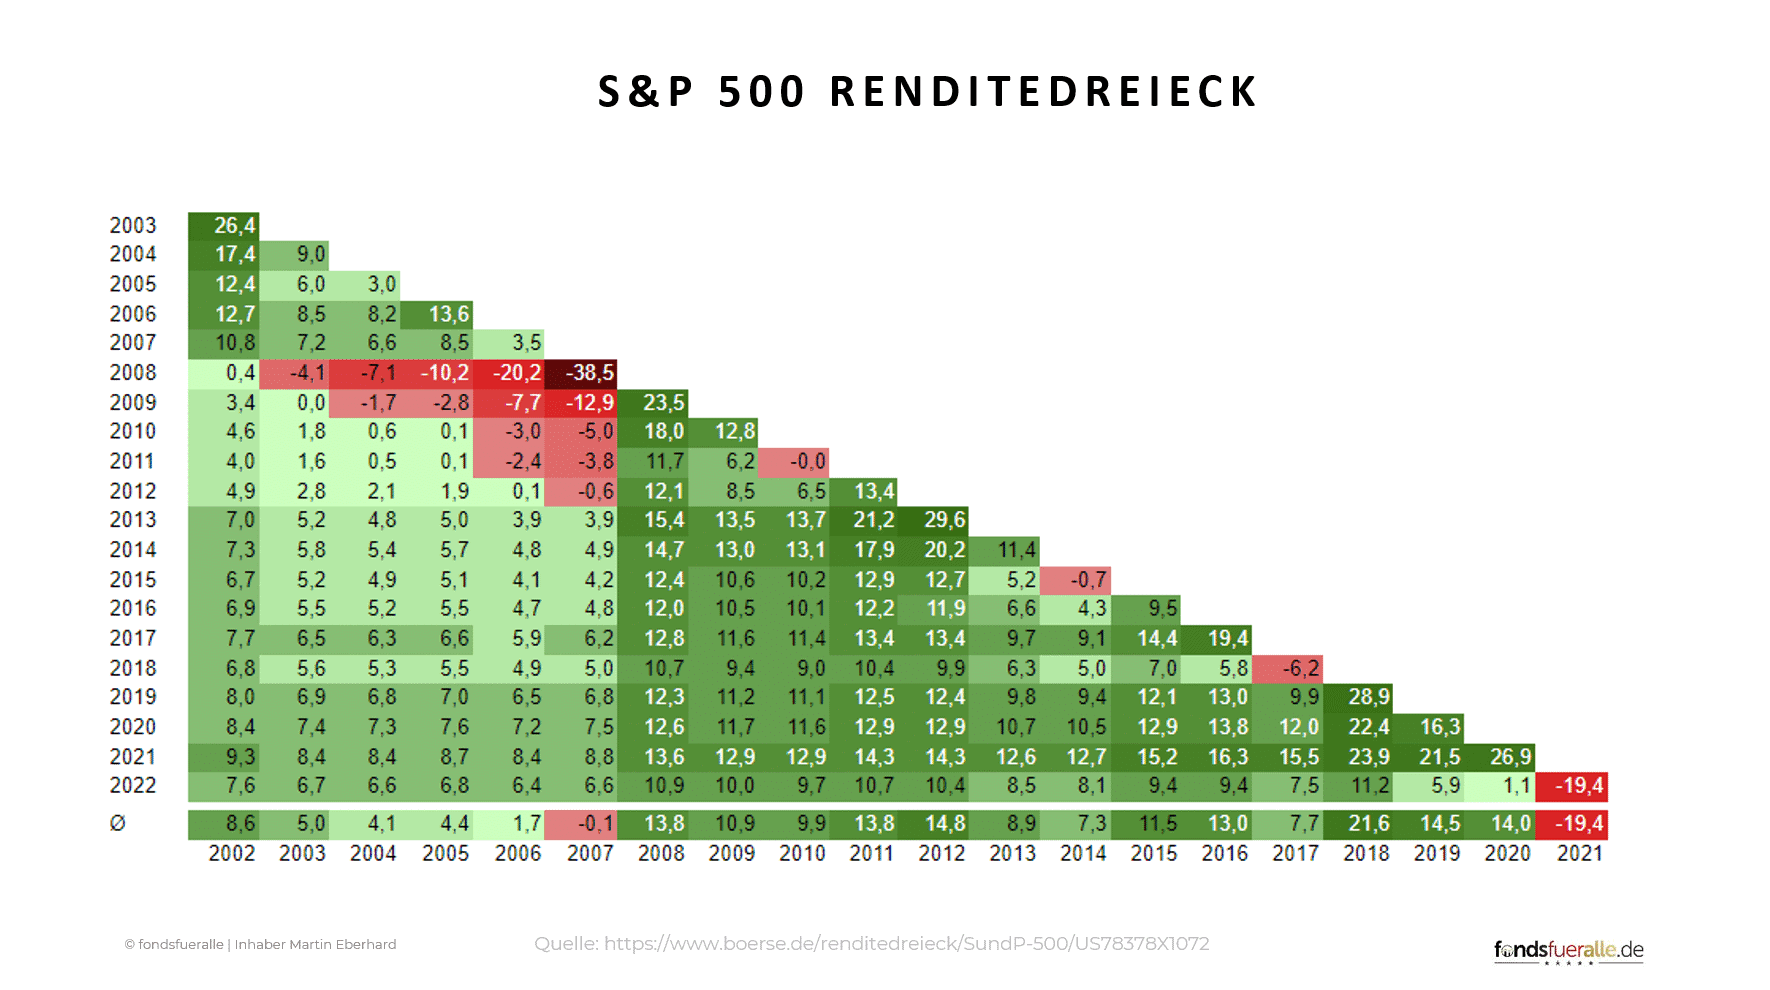 S&P 500 Renditedreieck